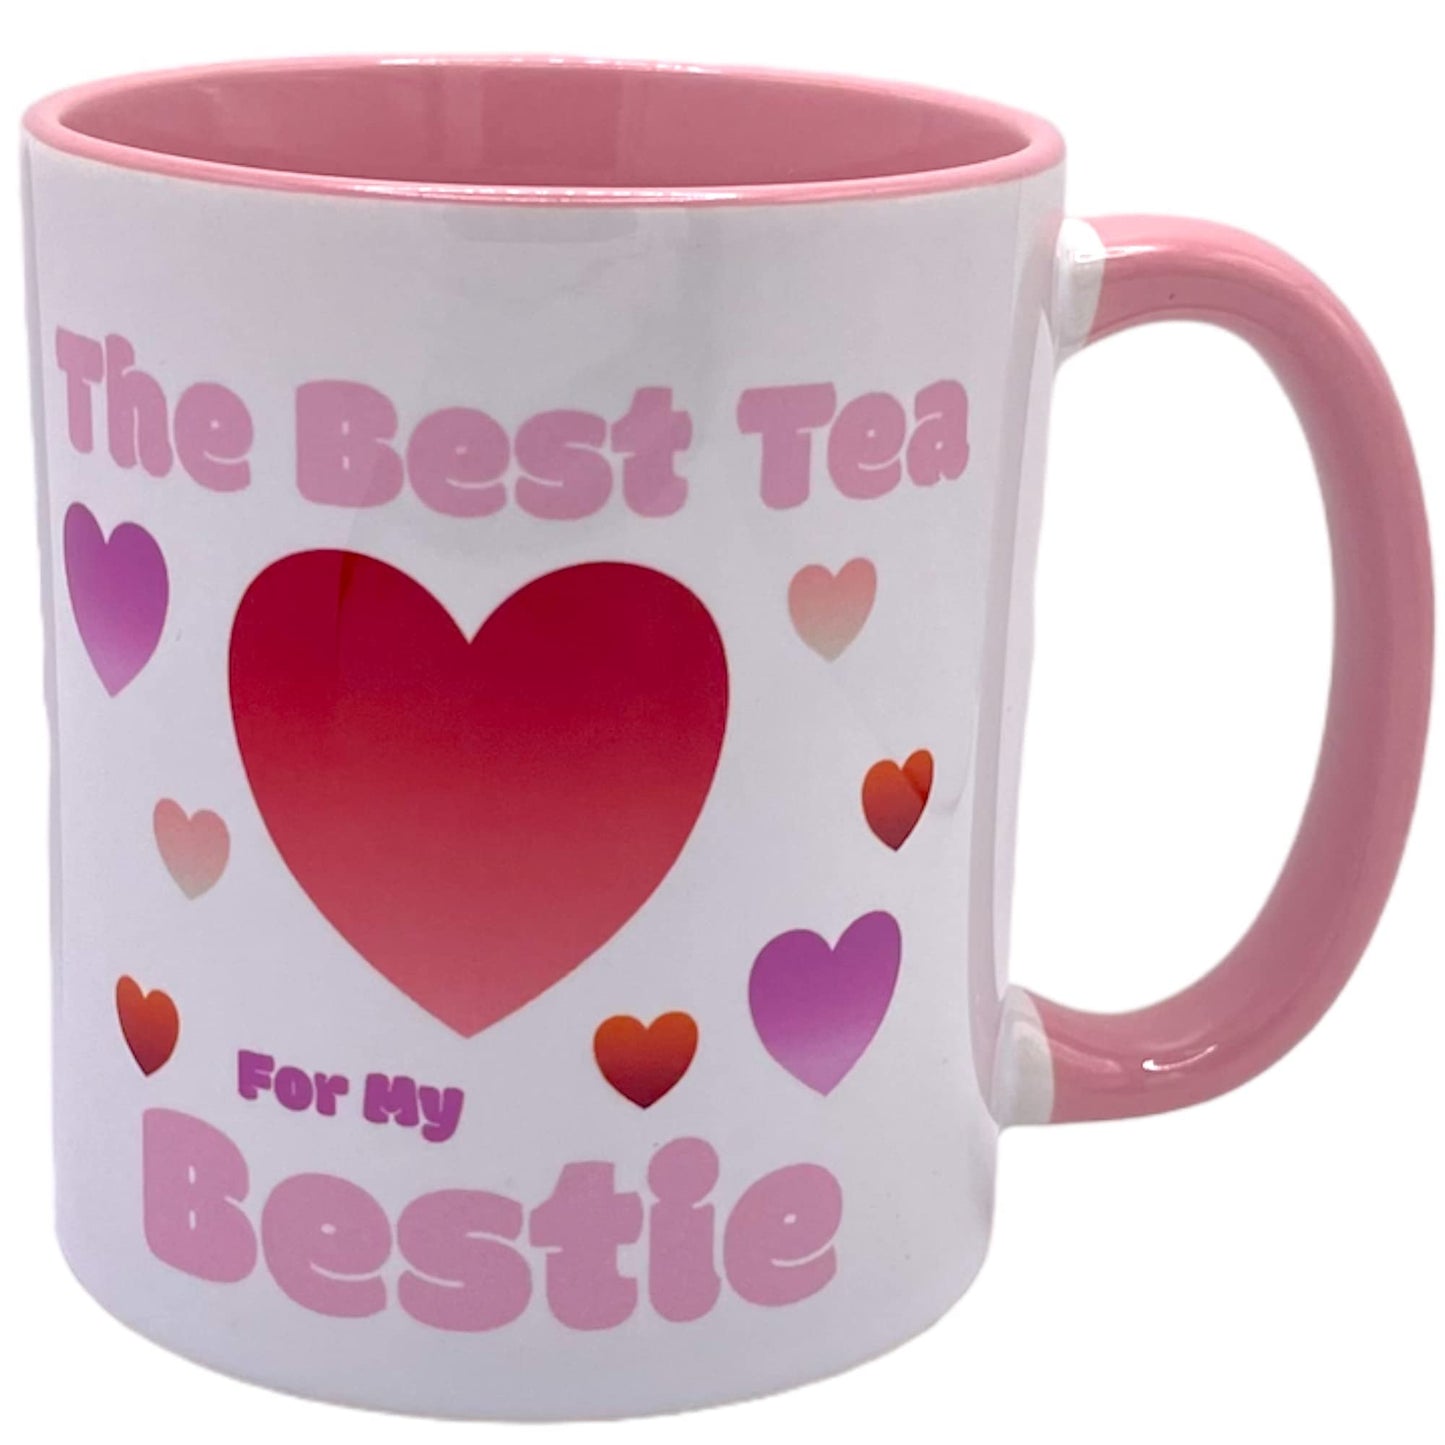 Best Tea for My Bestie Mug.